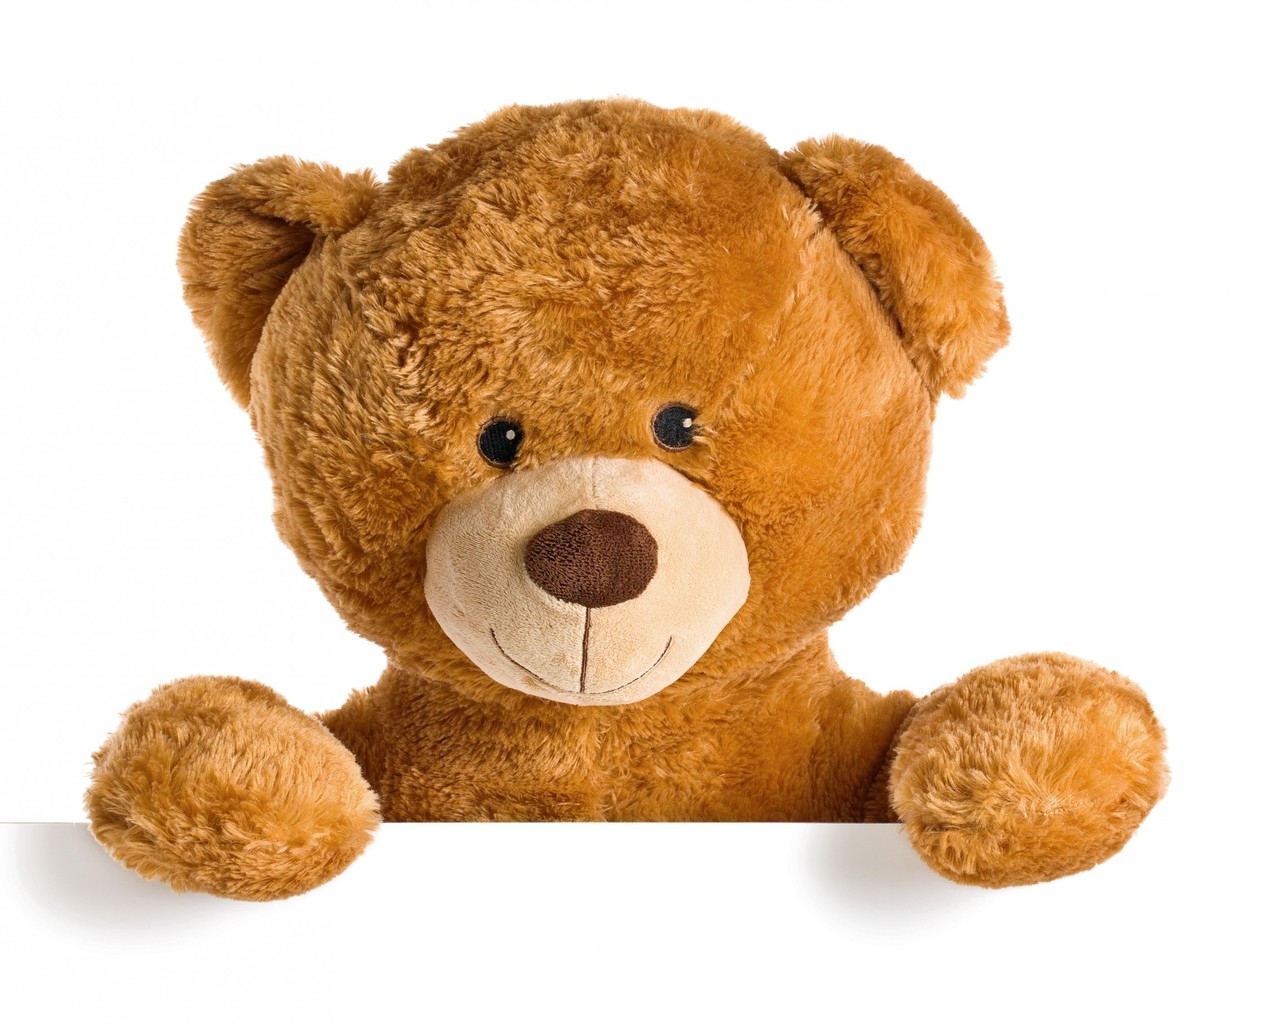 Cute Teddy Bear for 1280 x 1024 resolution